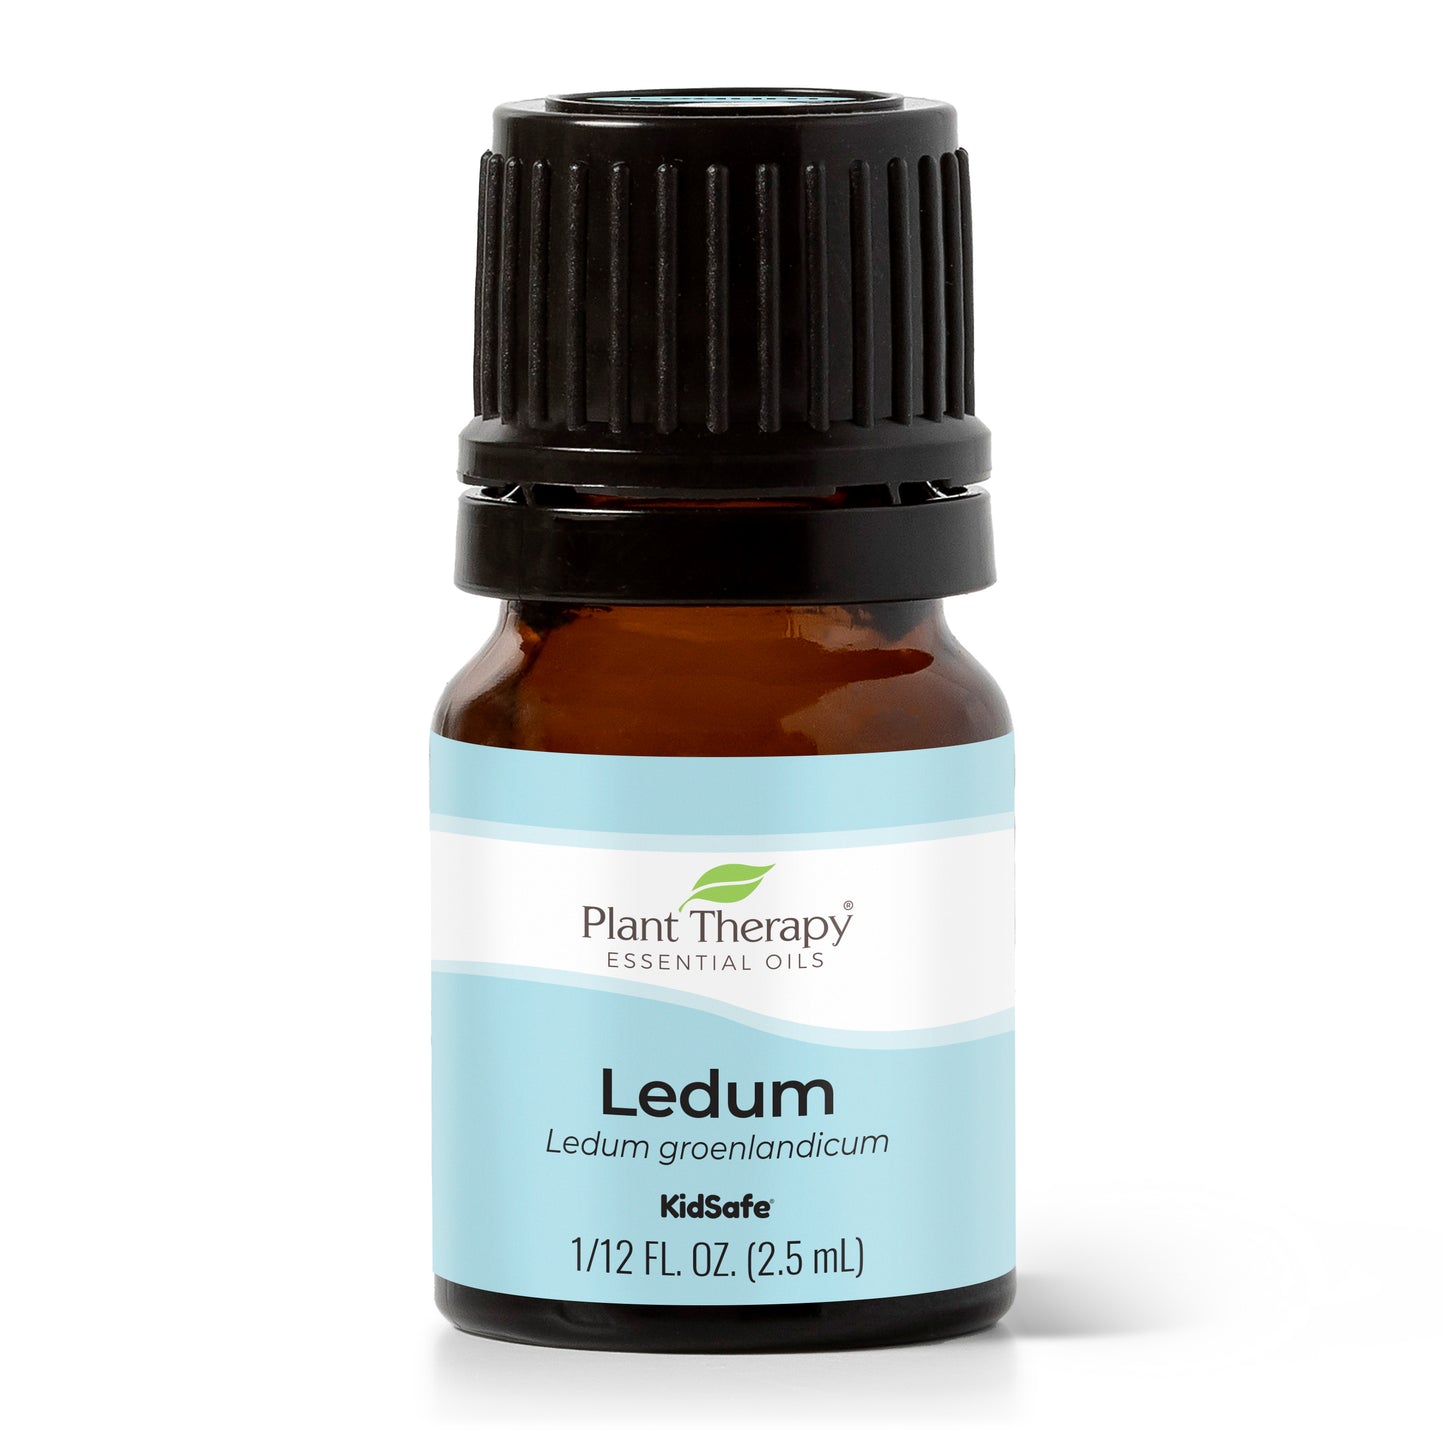 Ledum Essential Oil